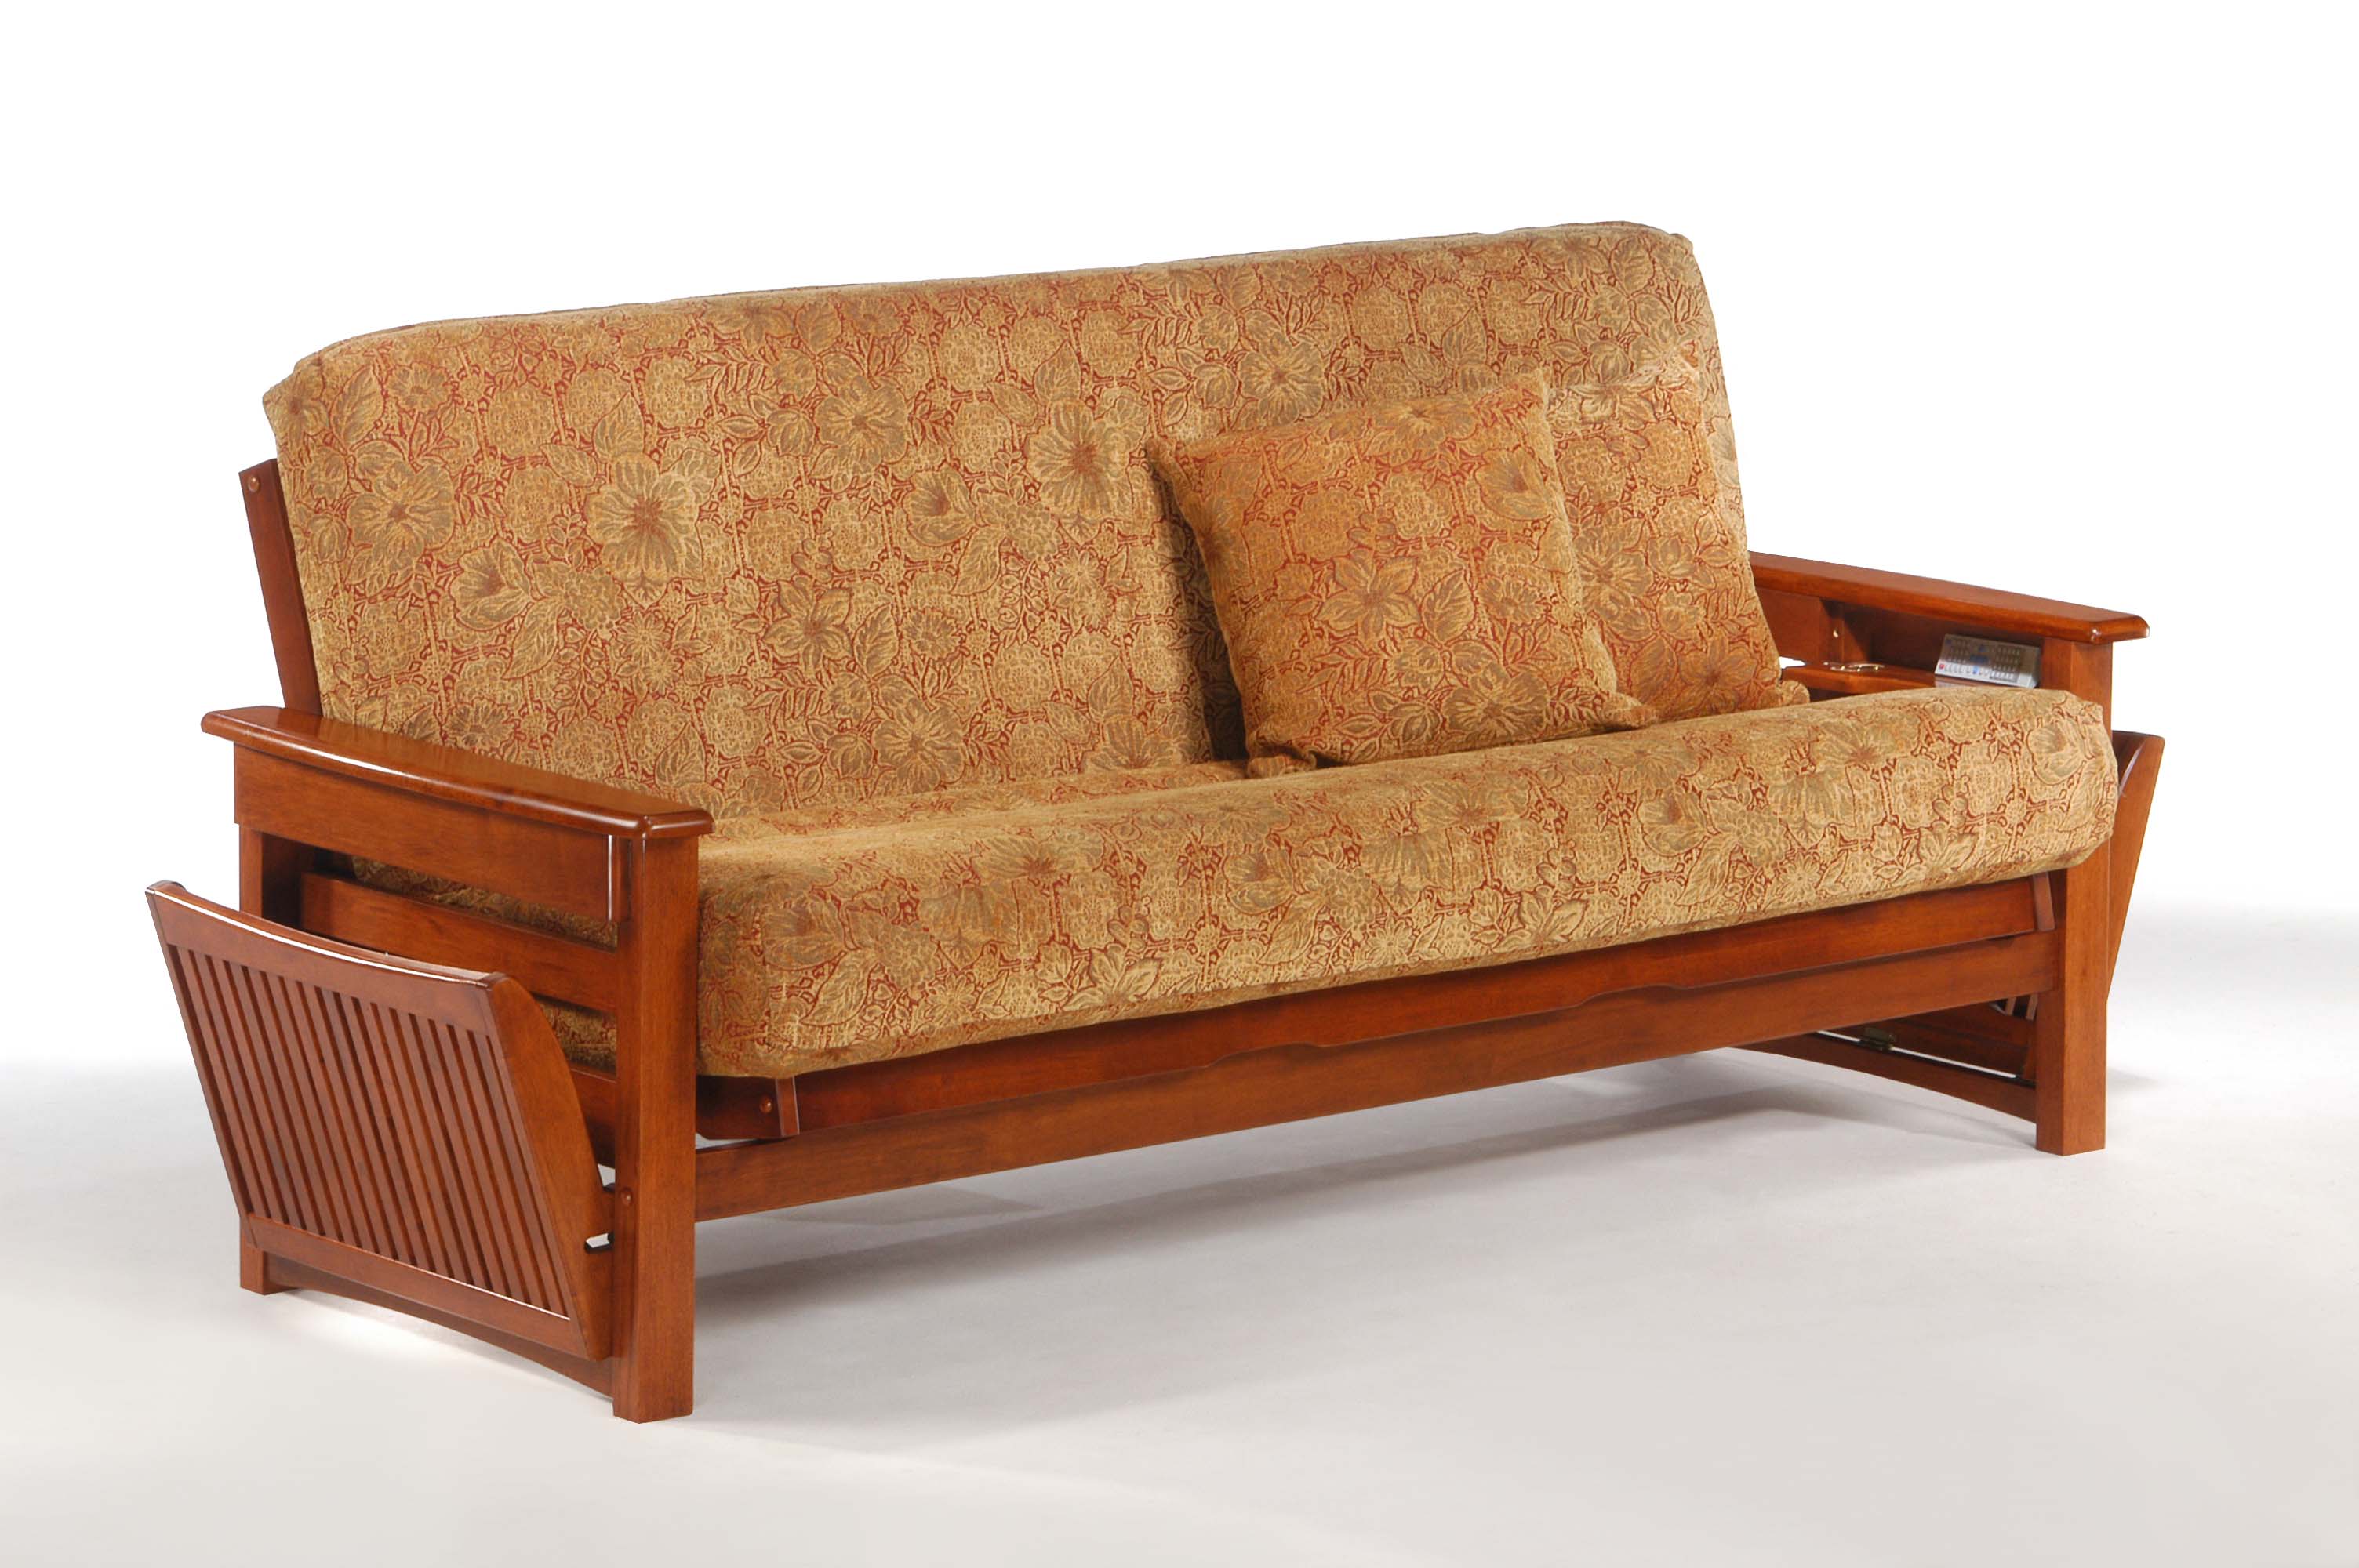 Мебель диваны деревянные. Диван Футон Малайзия lb2307d. Диван Фарго с деревянными подлокотниками. Диван кровать Футон Малайзии.